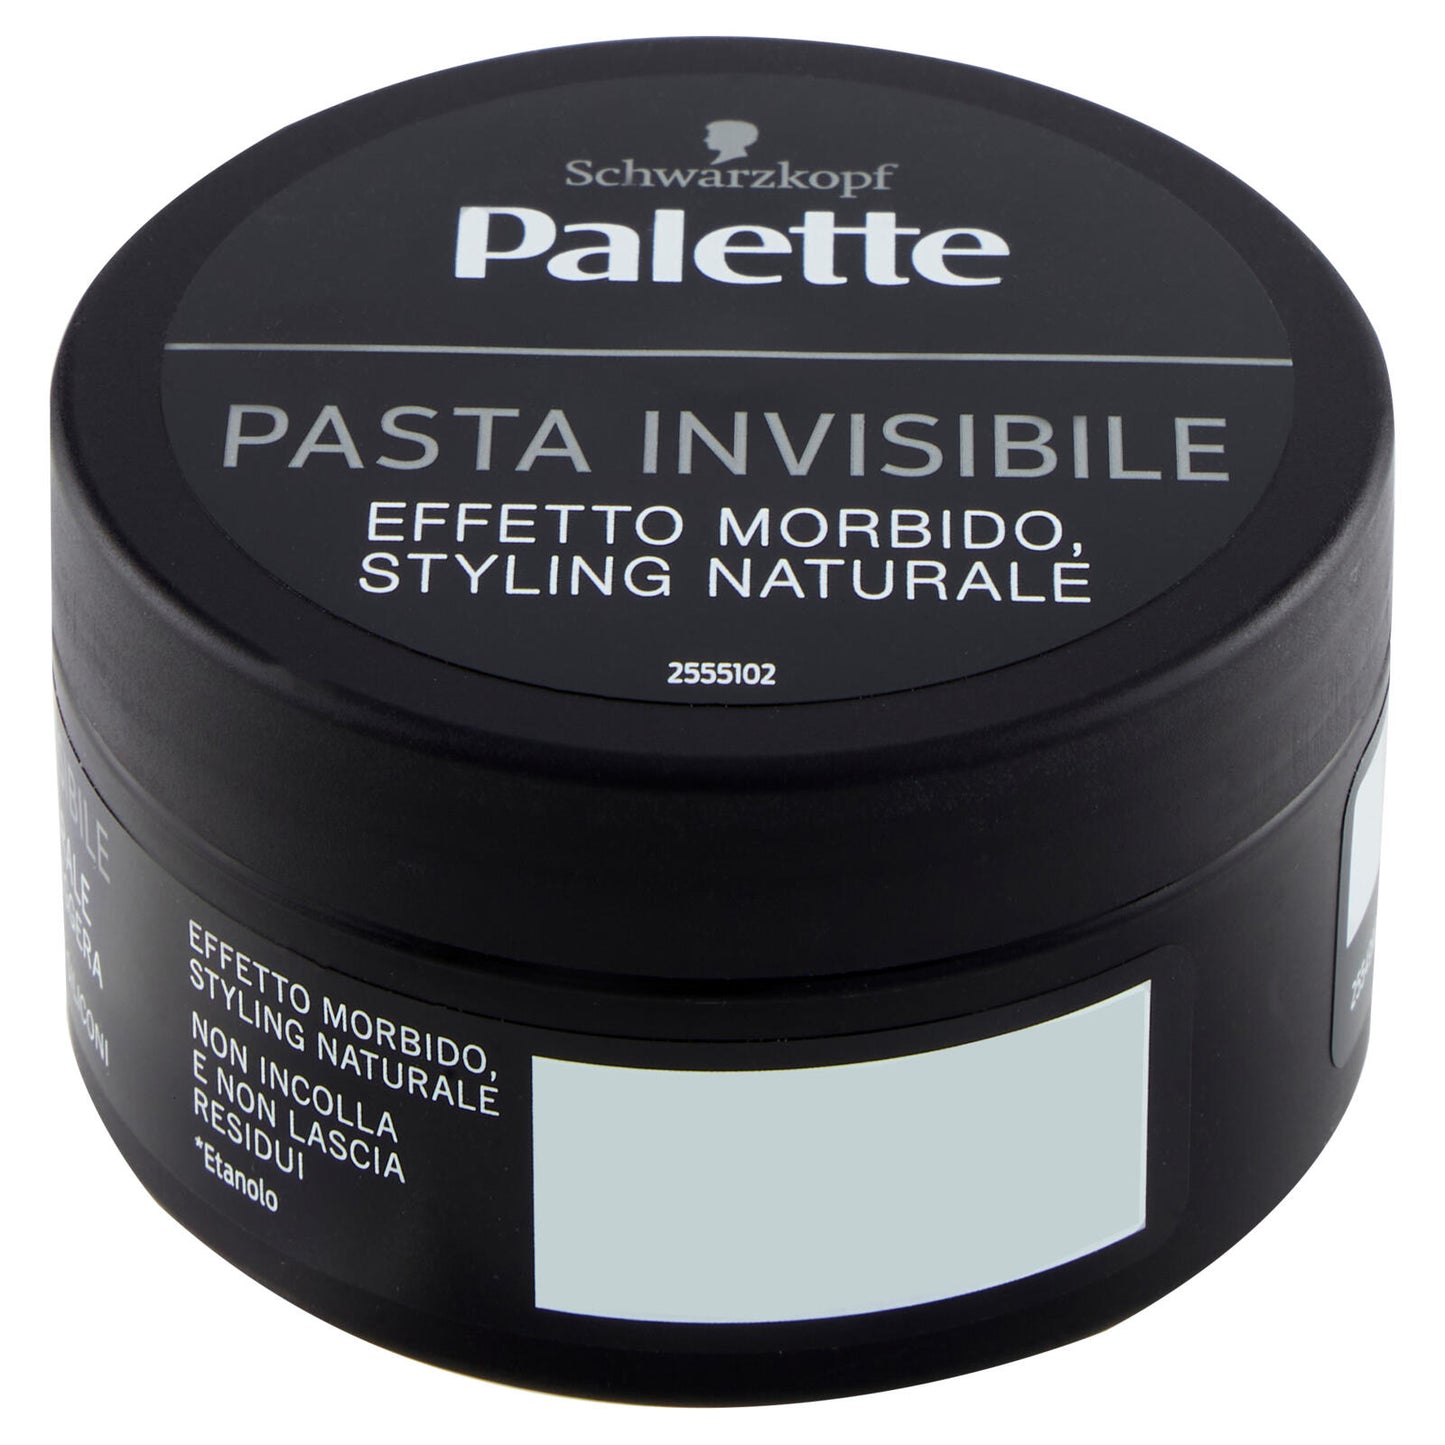 Palette Pasta Invisibile 100 ml